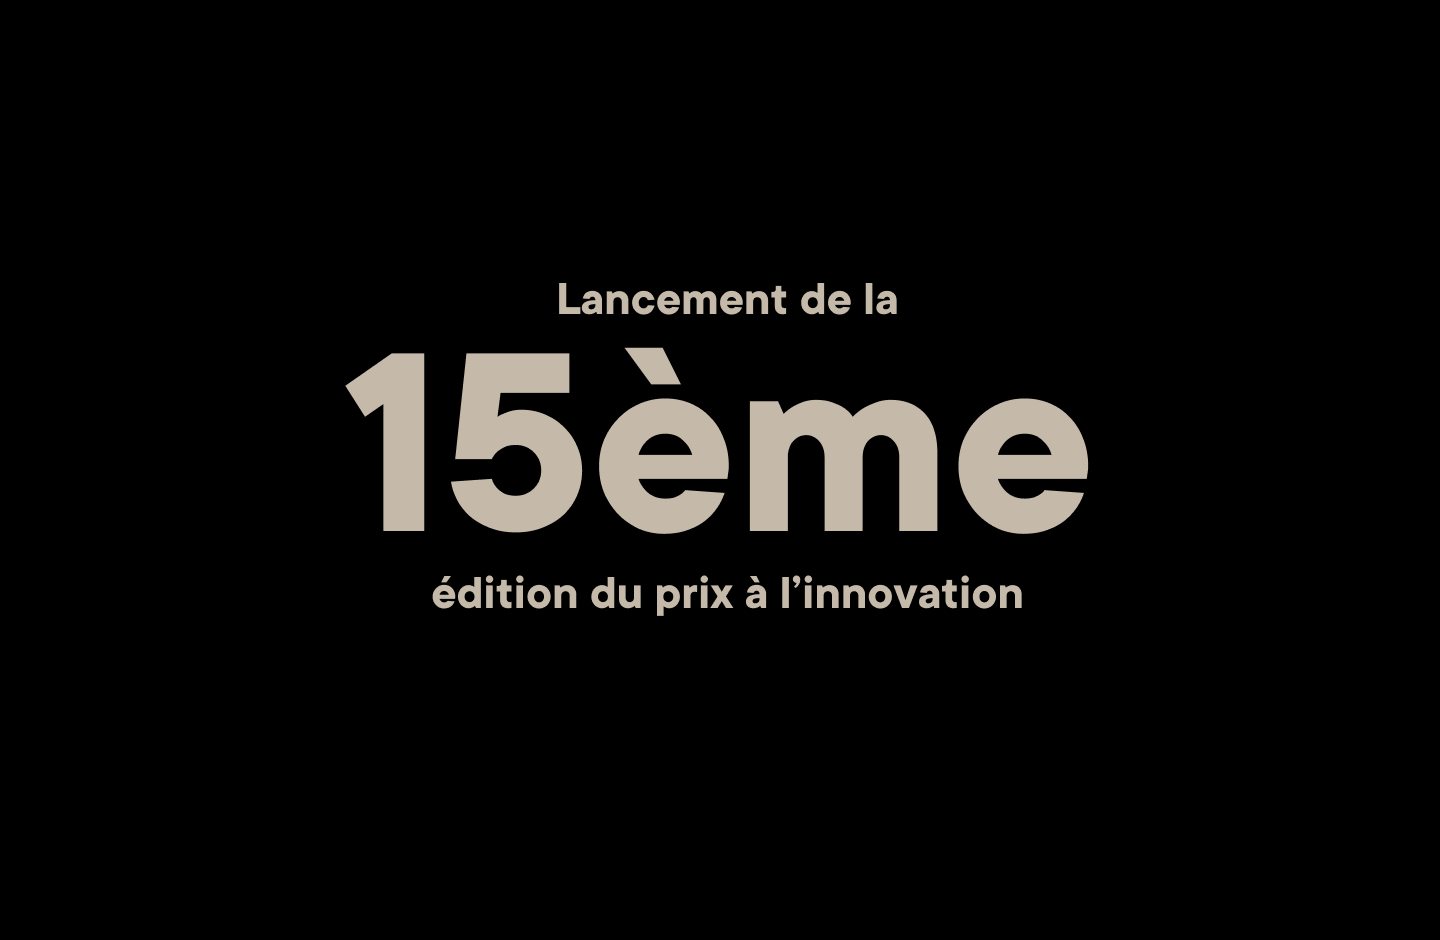 Le canton de Fribourg lance la 15ème édition du prix à l’innovation